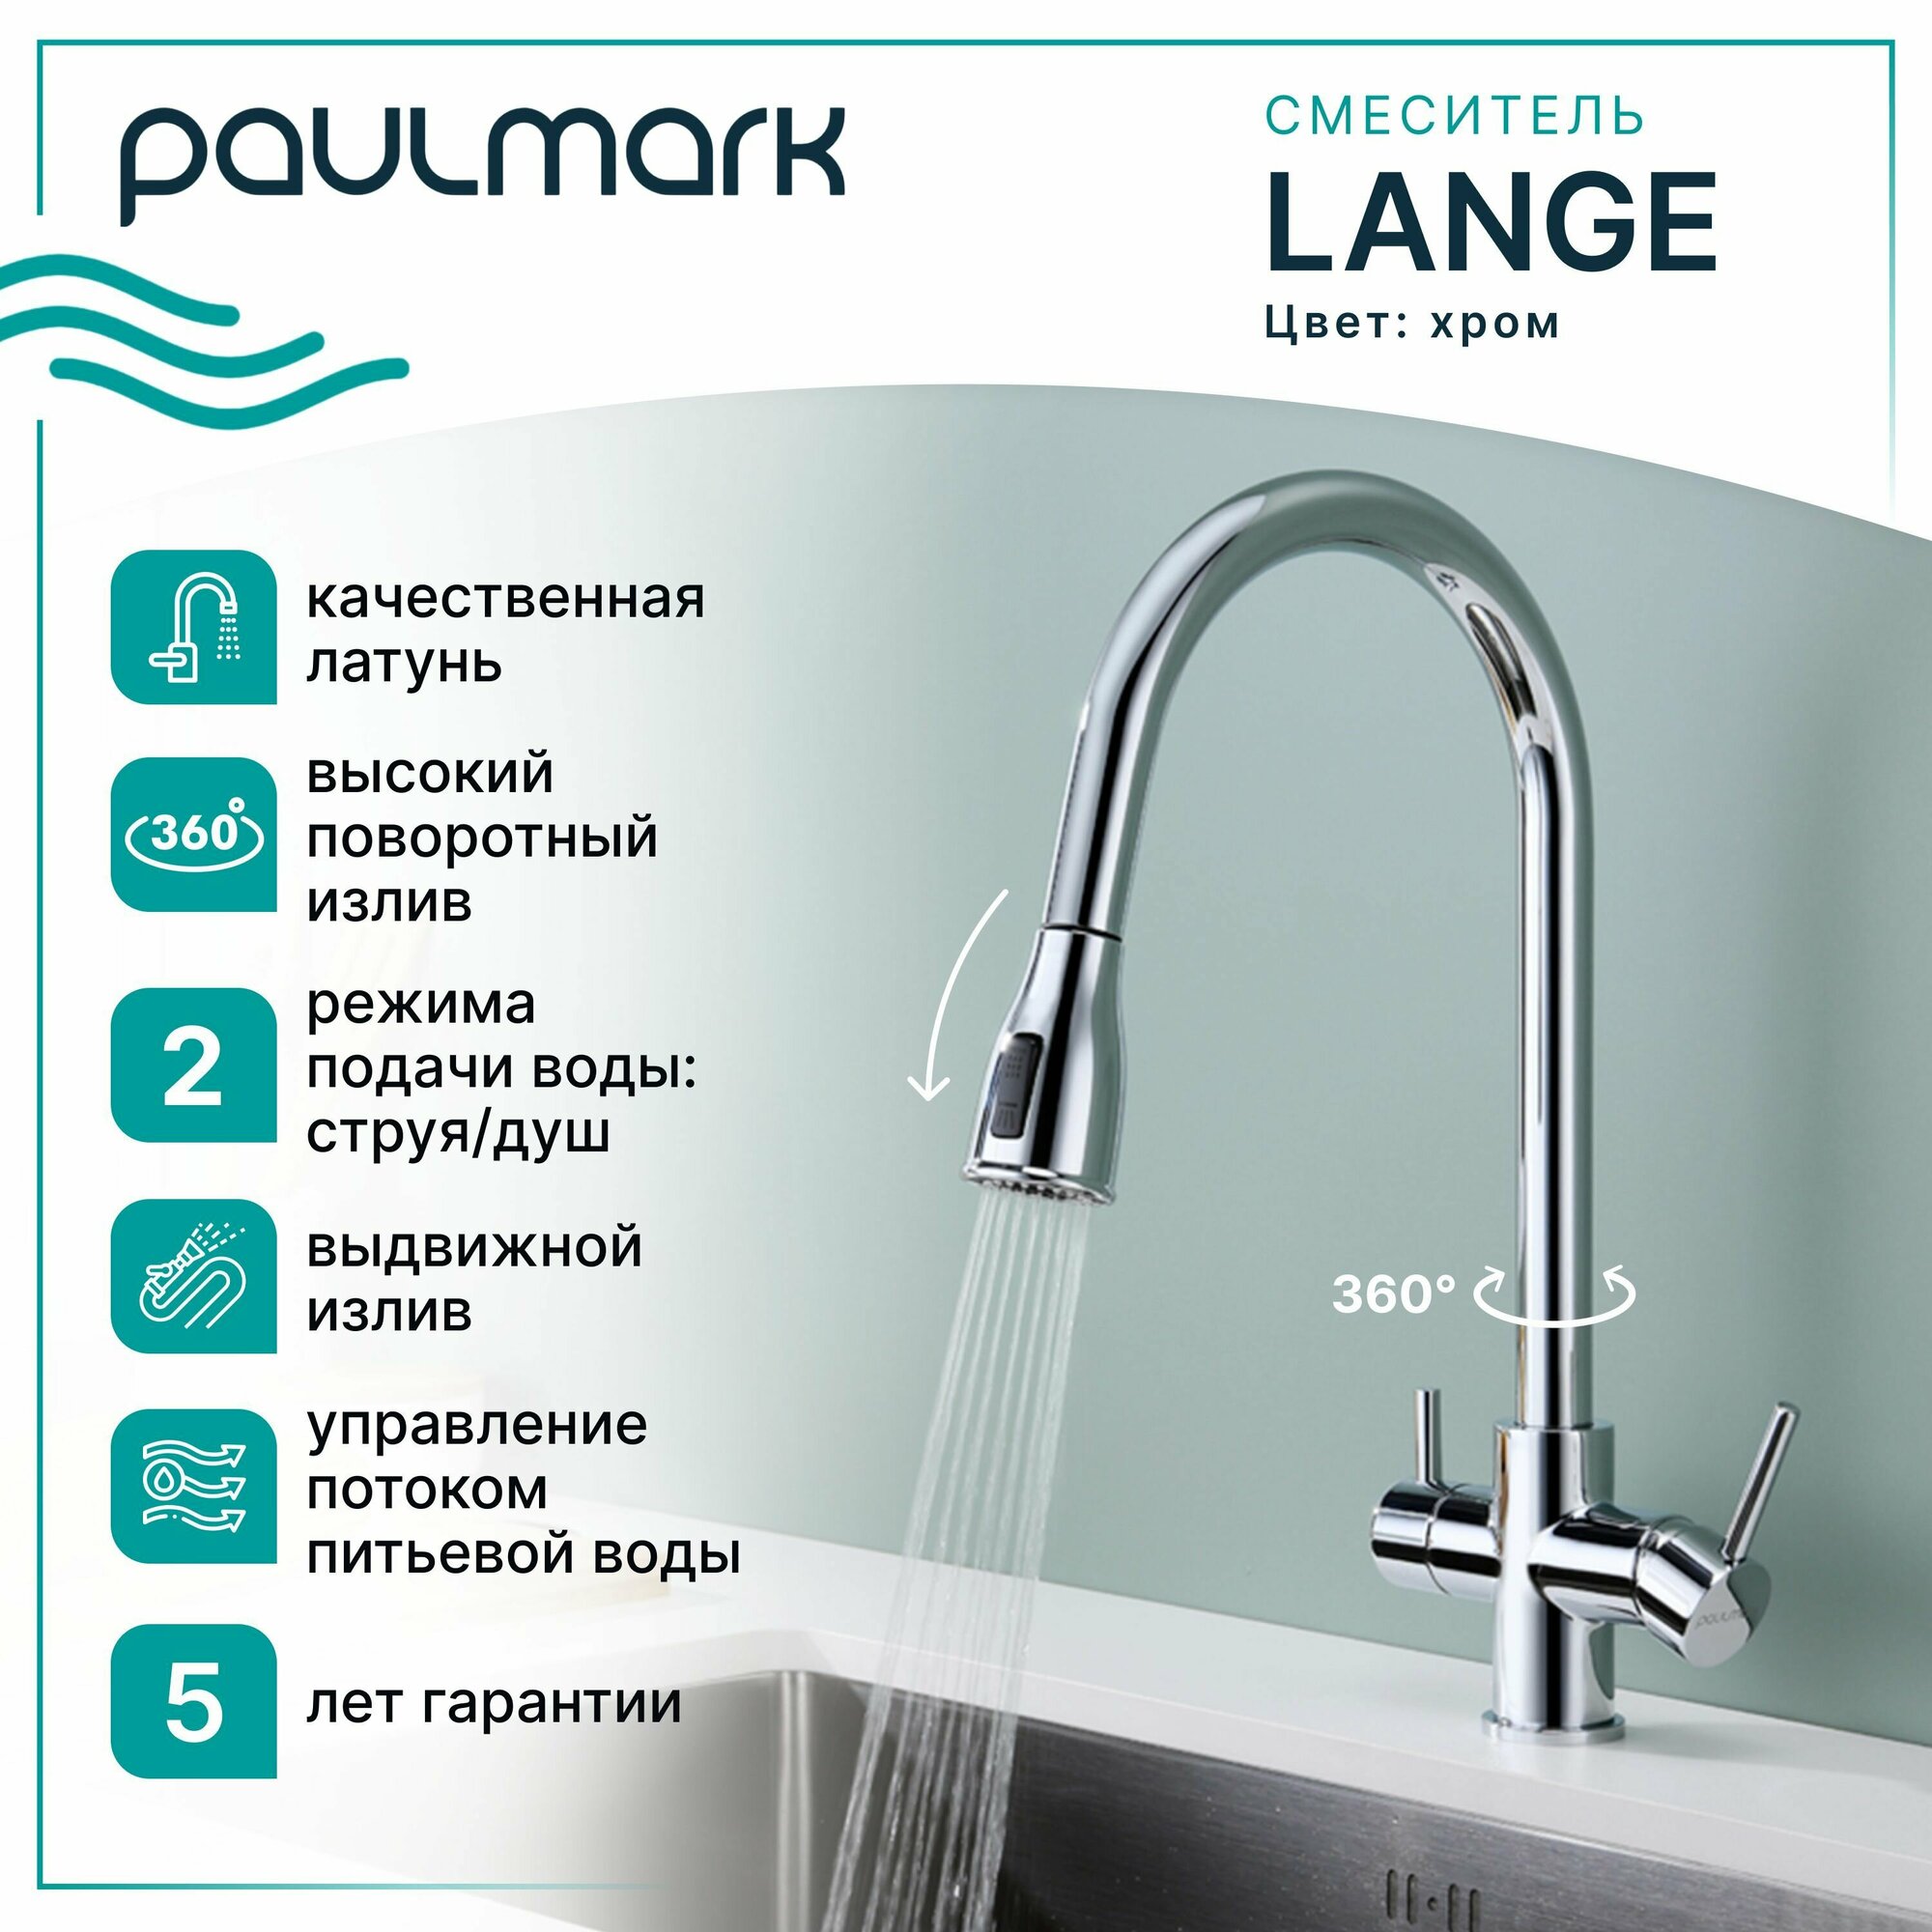 Смеситель для кухни с гибким выдвижным изливом Paulmark LANGE, подключение к системе фильтрации воды (отдельный канал), режимы струя / душ, латунь, на мойку / столешницу, хром, La214212-CR